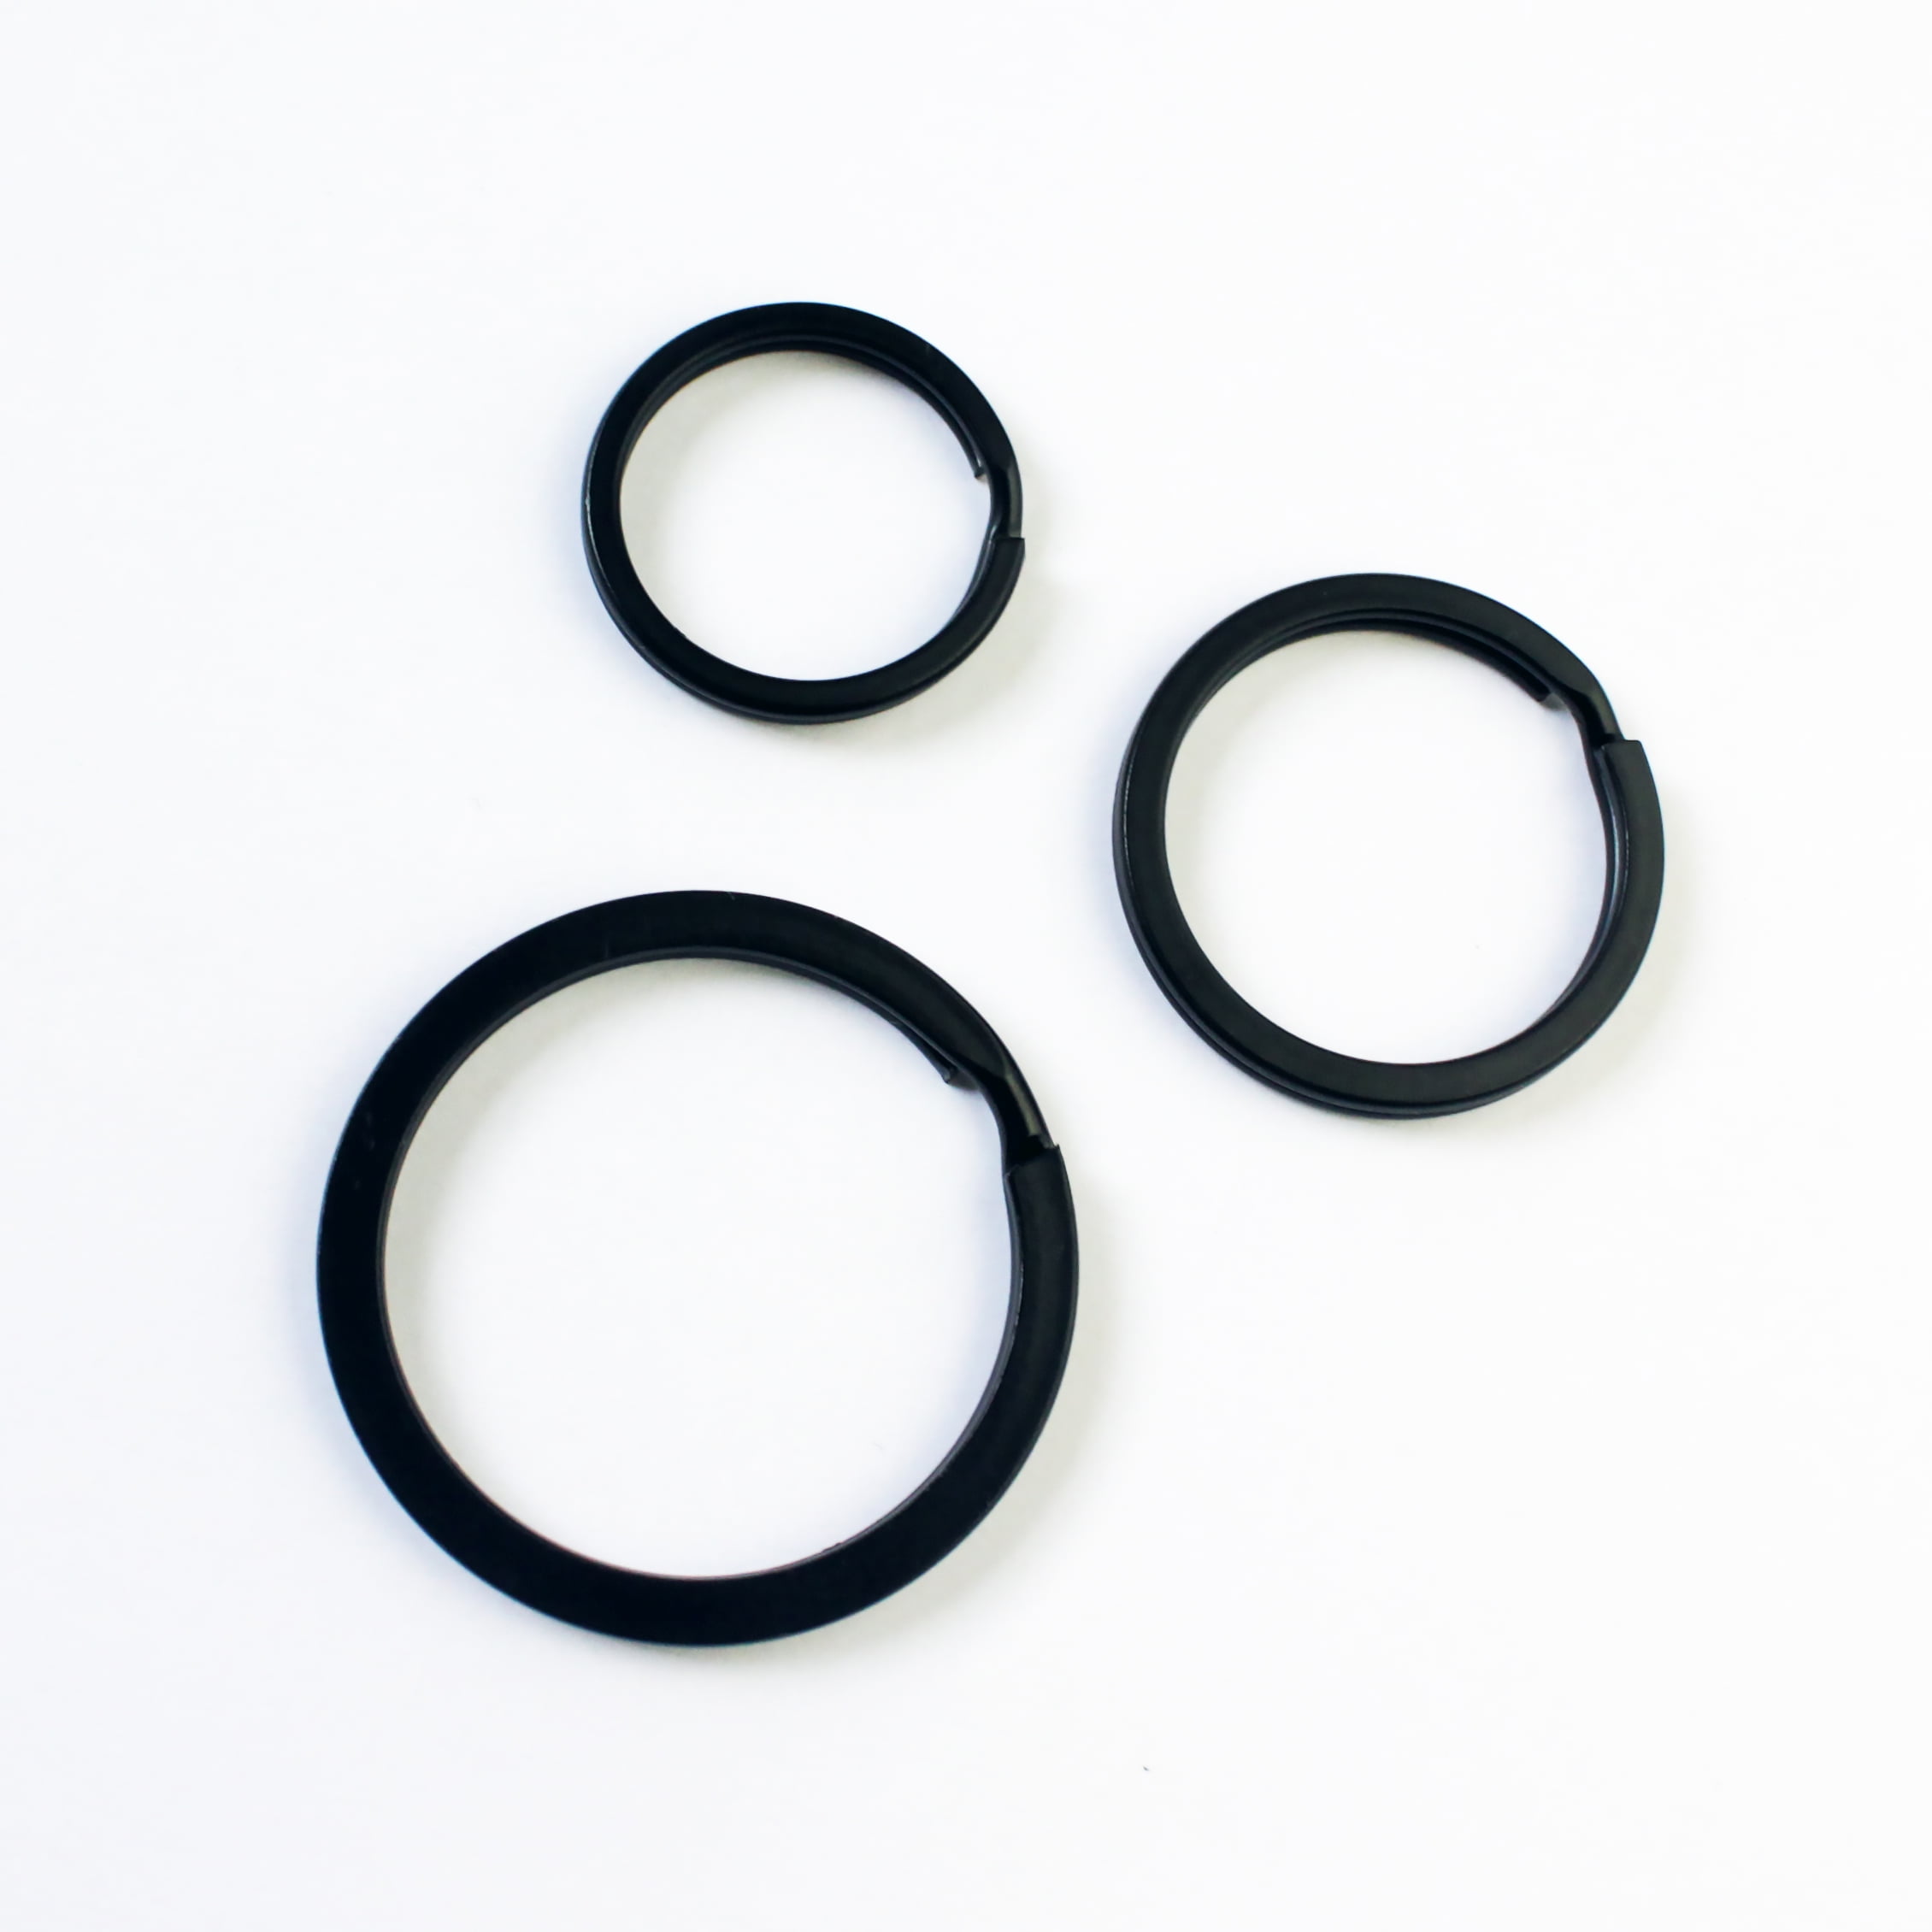 Split Key Rings Large 40-50MM Flat Surface Double Metal Loop Black